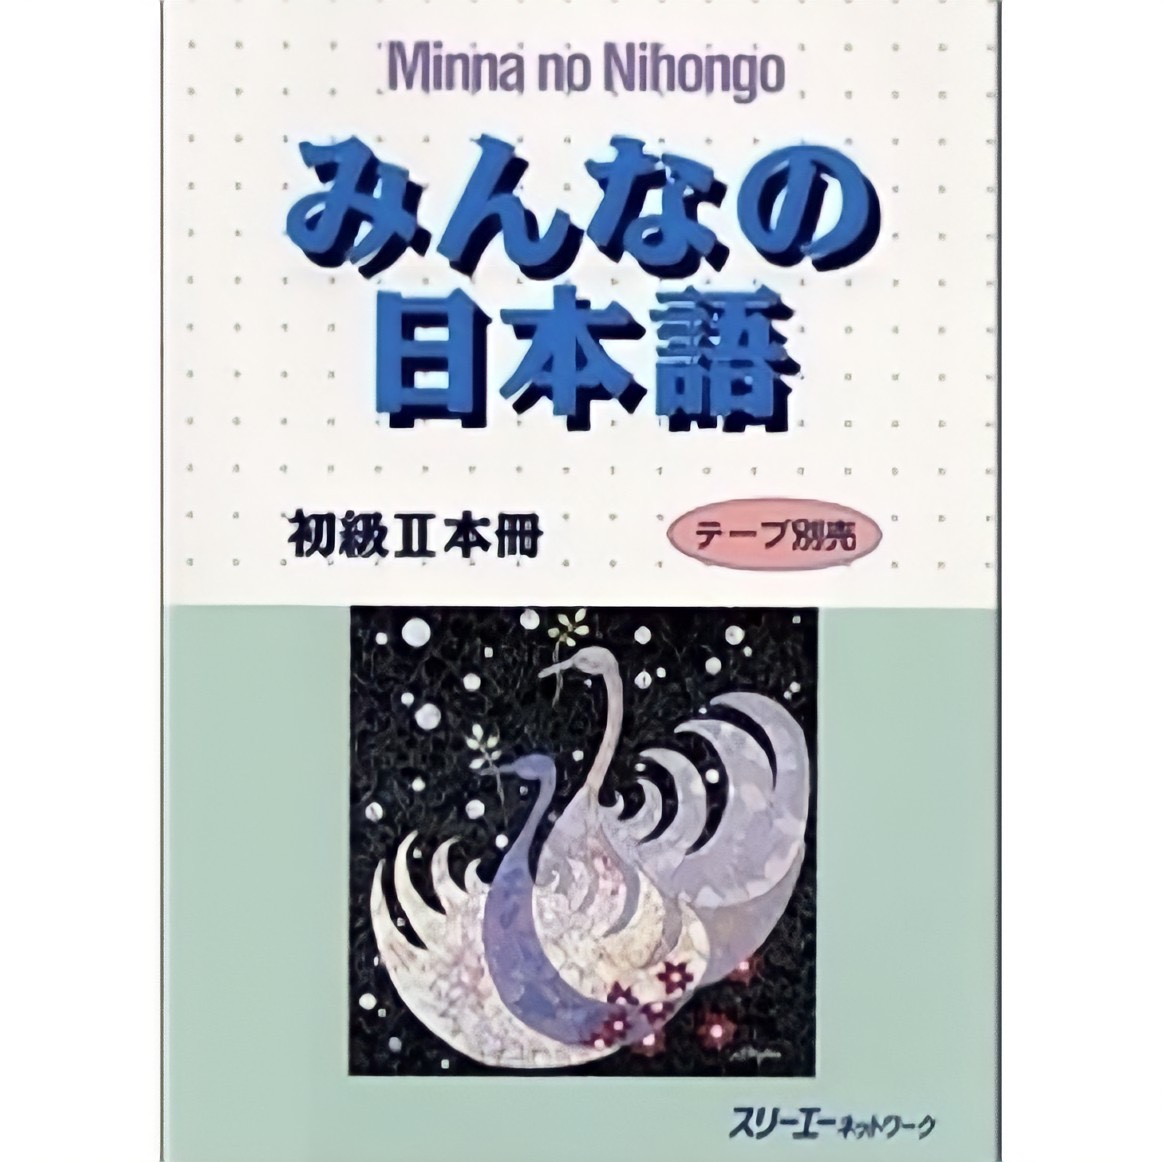 Sách Minna No Nihongo Sơ cấp 2 bản cũ: Honsatsu, sách giáo khoa